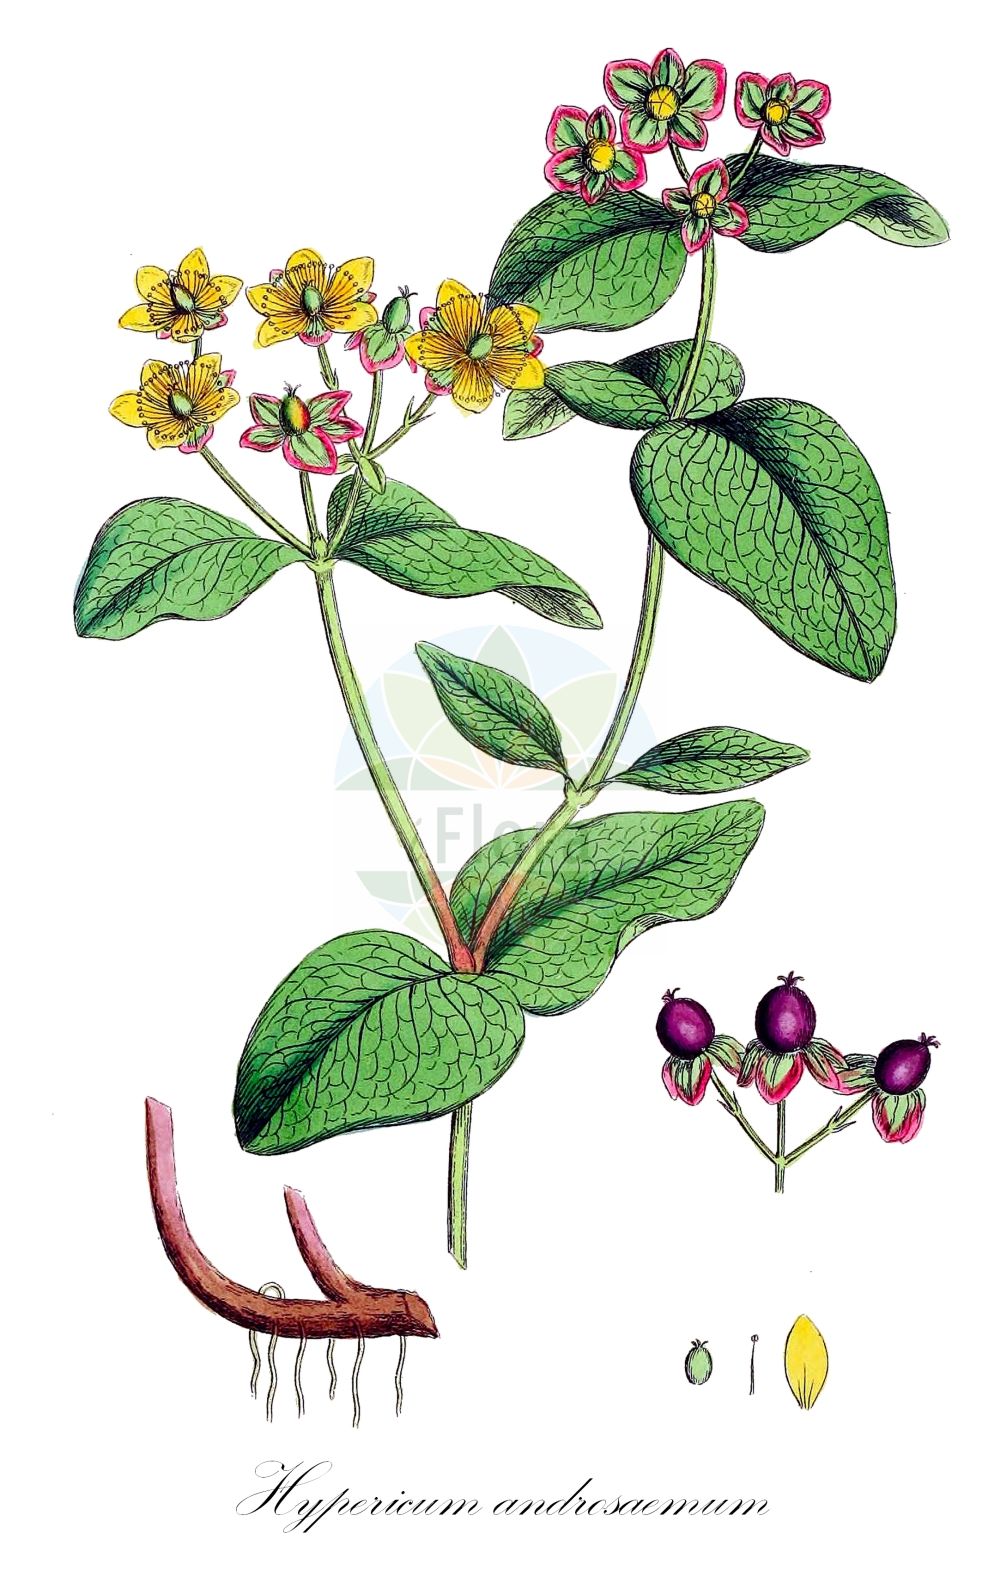 Historische Abbildung von Hypericum androsaemum (Tutsan). ---- Historical Drawing of Hypericum androsaemum (Tutsan).(Hypericum androsaemum,Tutsan,Androsaemum officinale,Hypericum androsaemum,Hypericum,Johanniskraut,St. John's Wort,Hypericaceae,Hartheugewächse,St. John's Wort family,Sowerby (1790-1813))